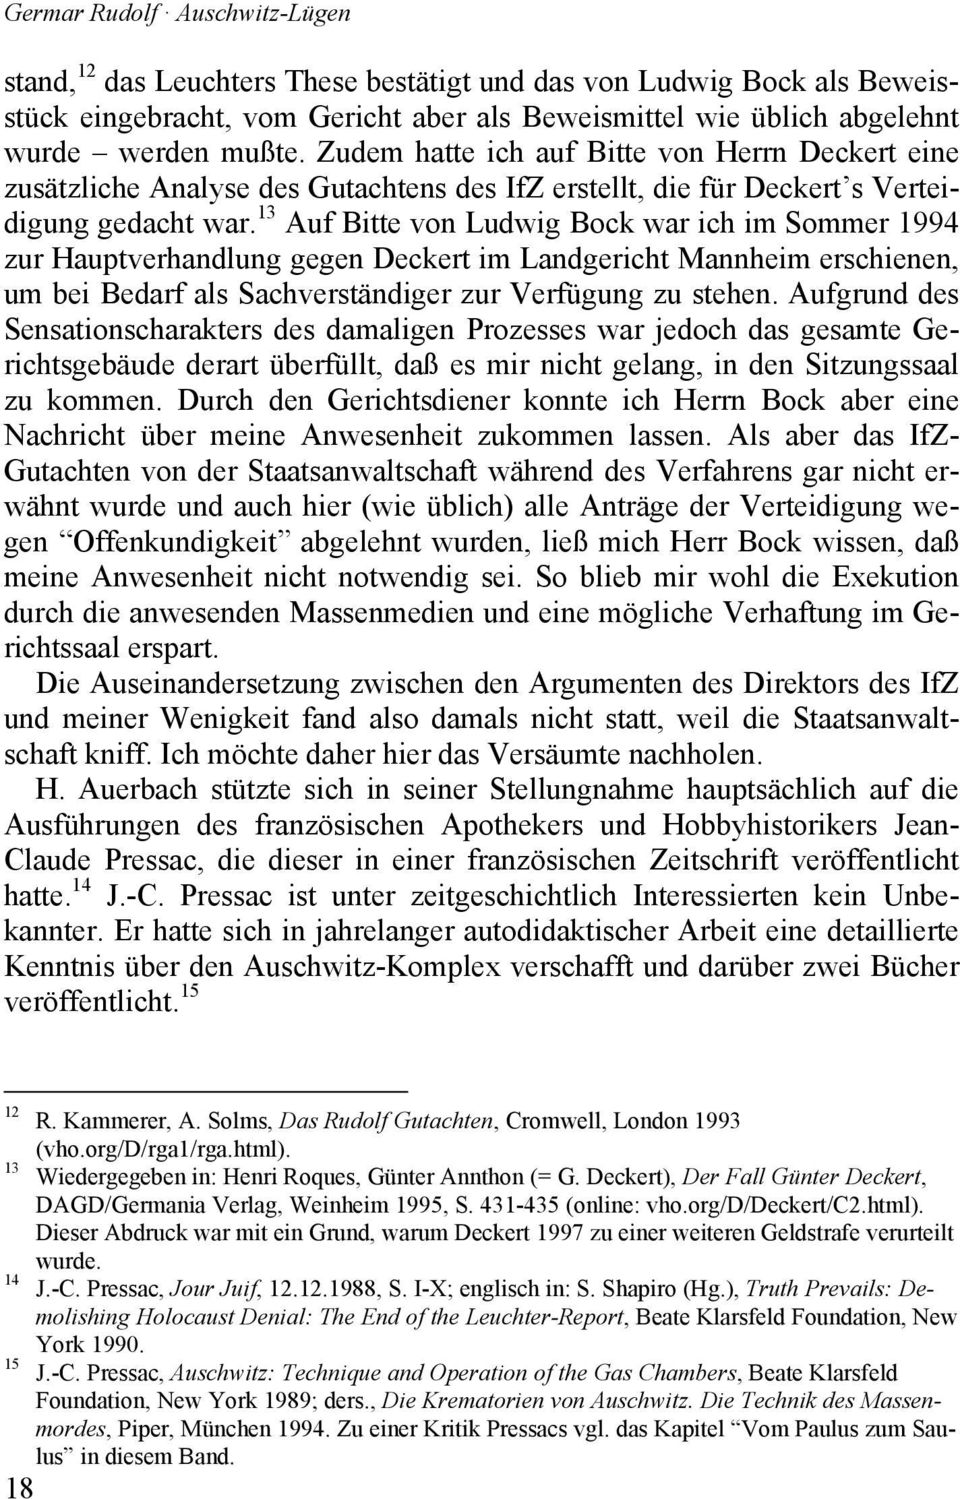 13 Auf Bitte von Ludwig Bock war ich im Sommer 1994 zur Hauptverhandlung gegen Deckert im Landgericht Mannheim erschienen, um bei Bedarf als Sachverständiger zur Verfügung zu stehen.